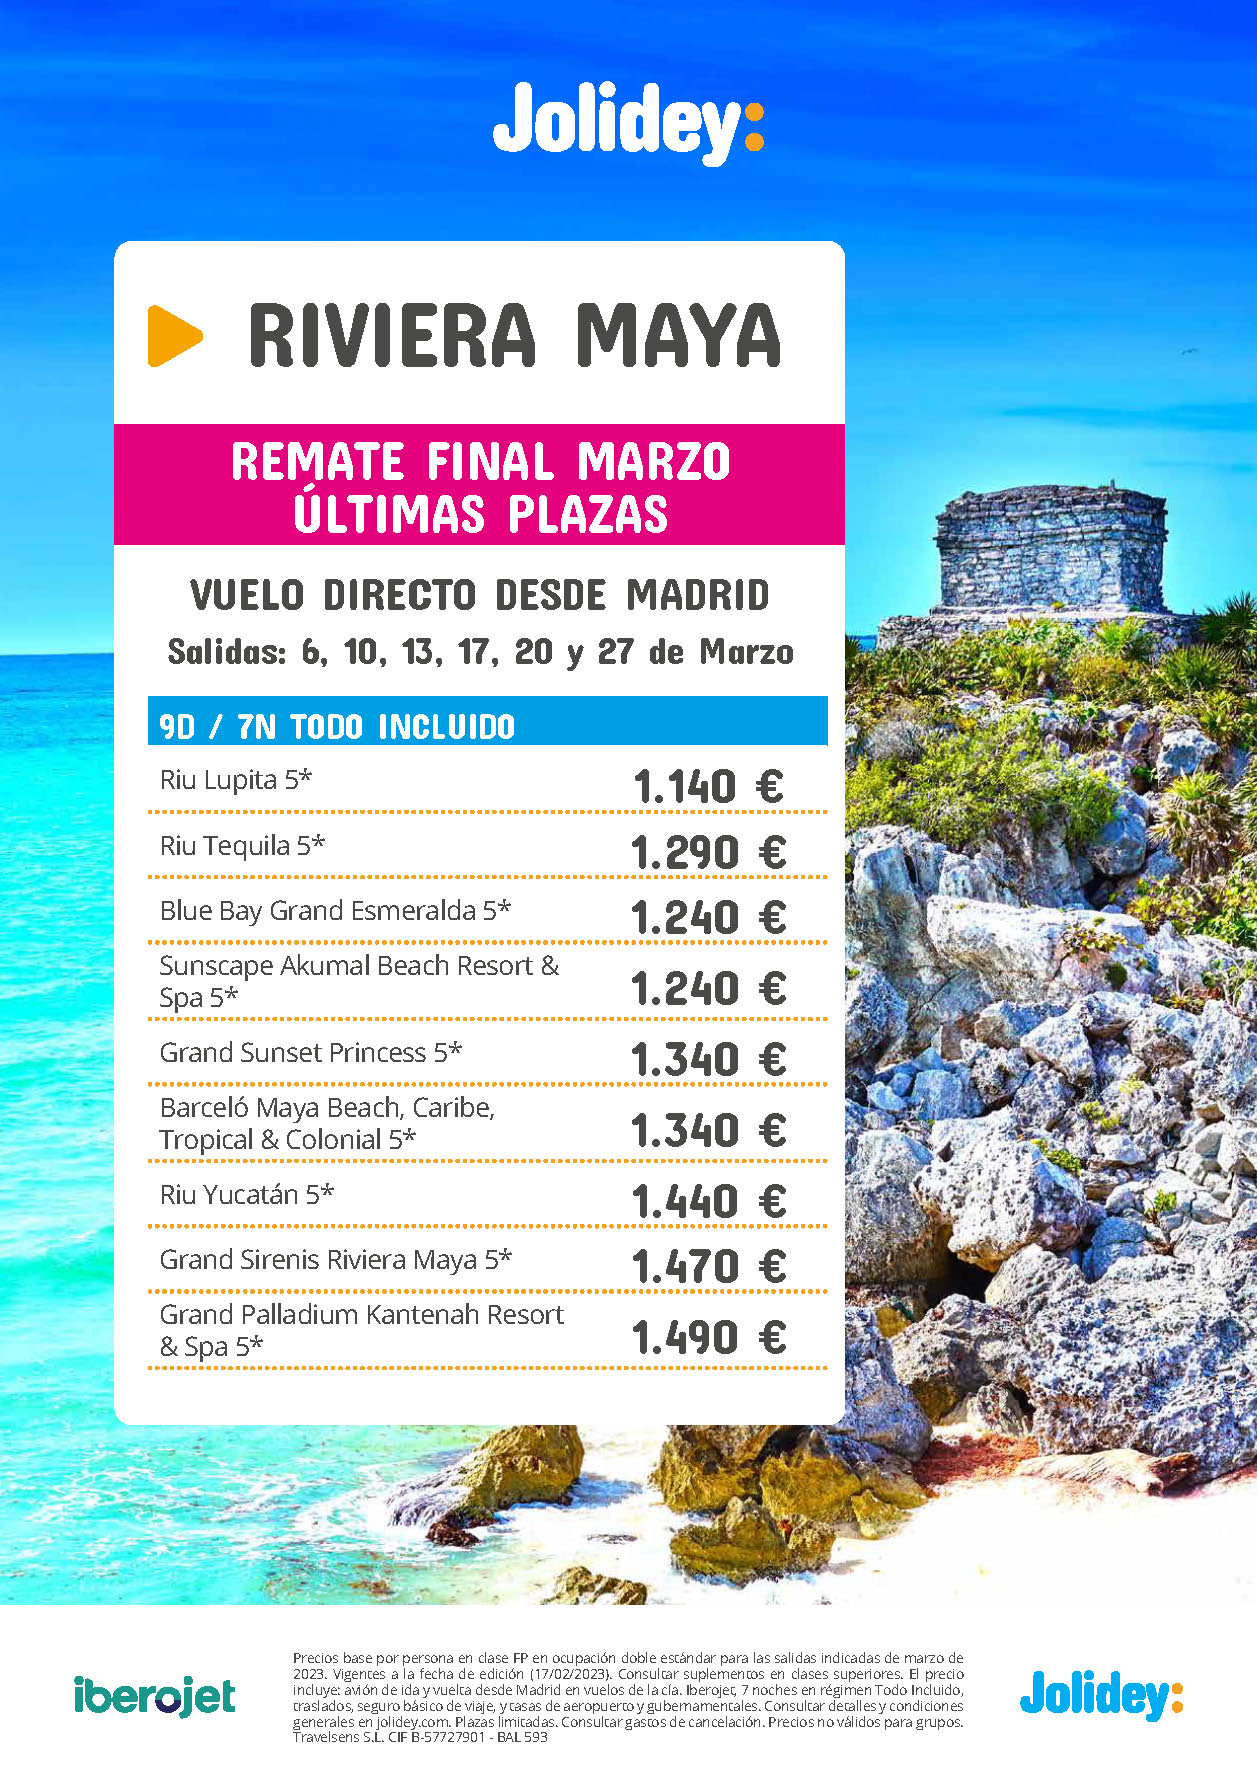 Oferta Jolidey Remate Final Marzo 2023 Riviera Maya Mexico 9 dias Todo Incluido salida en vuelo directo desde Madrid